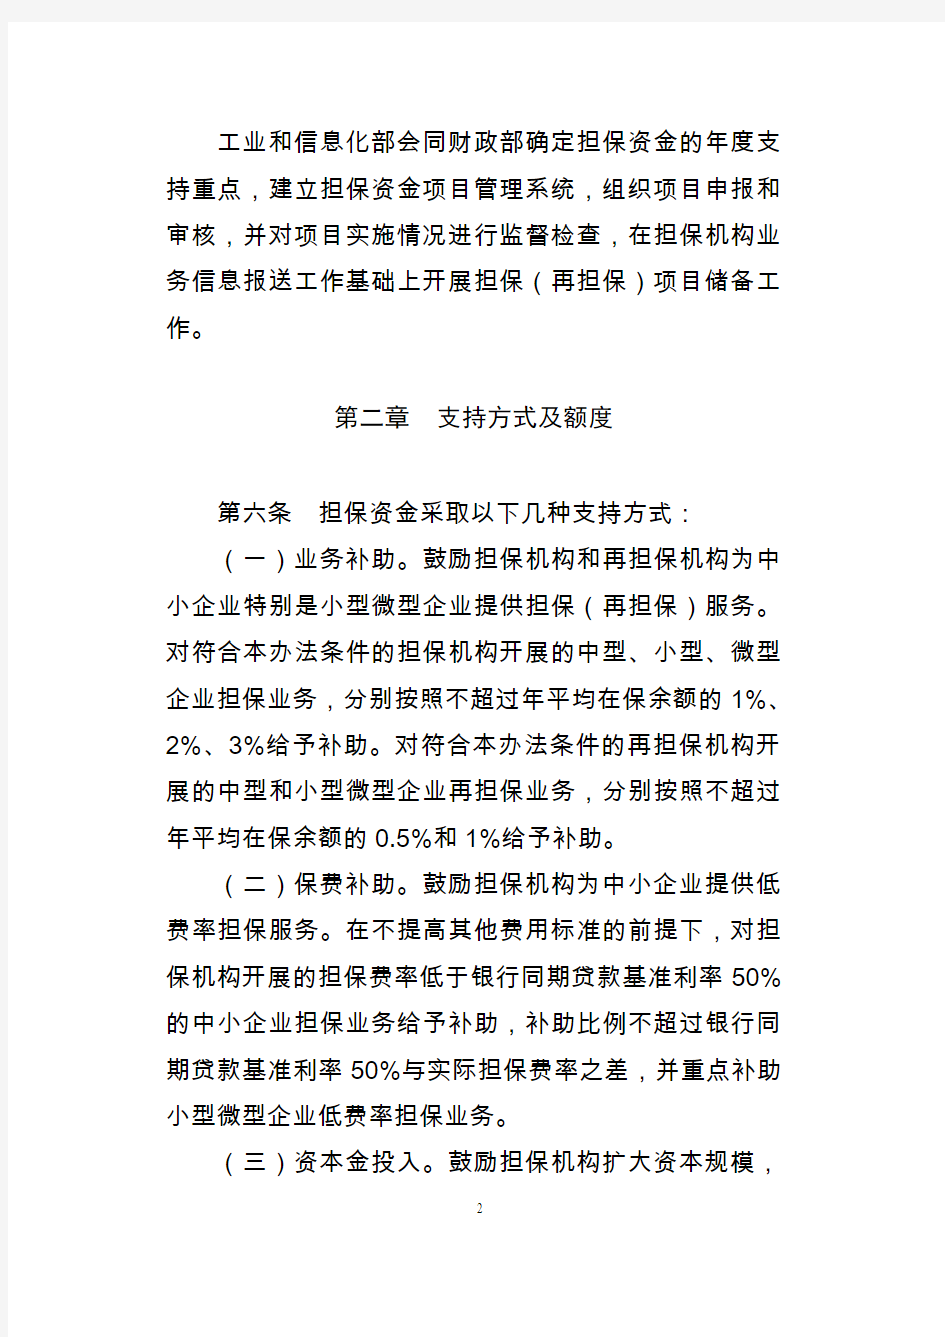 中小企业融资担保专项资金管理暂行办法-中华人民共和国财政部